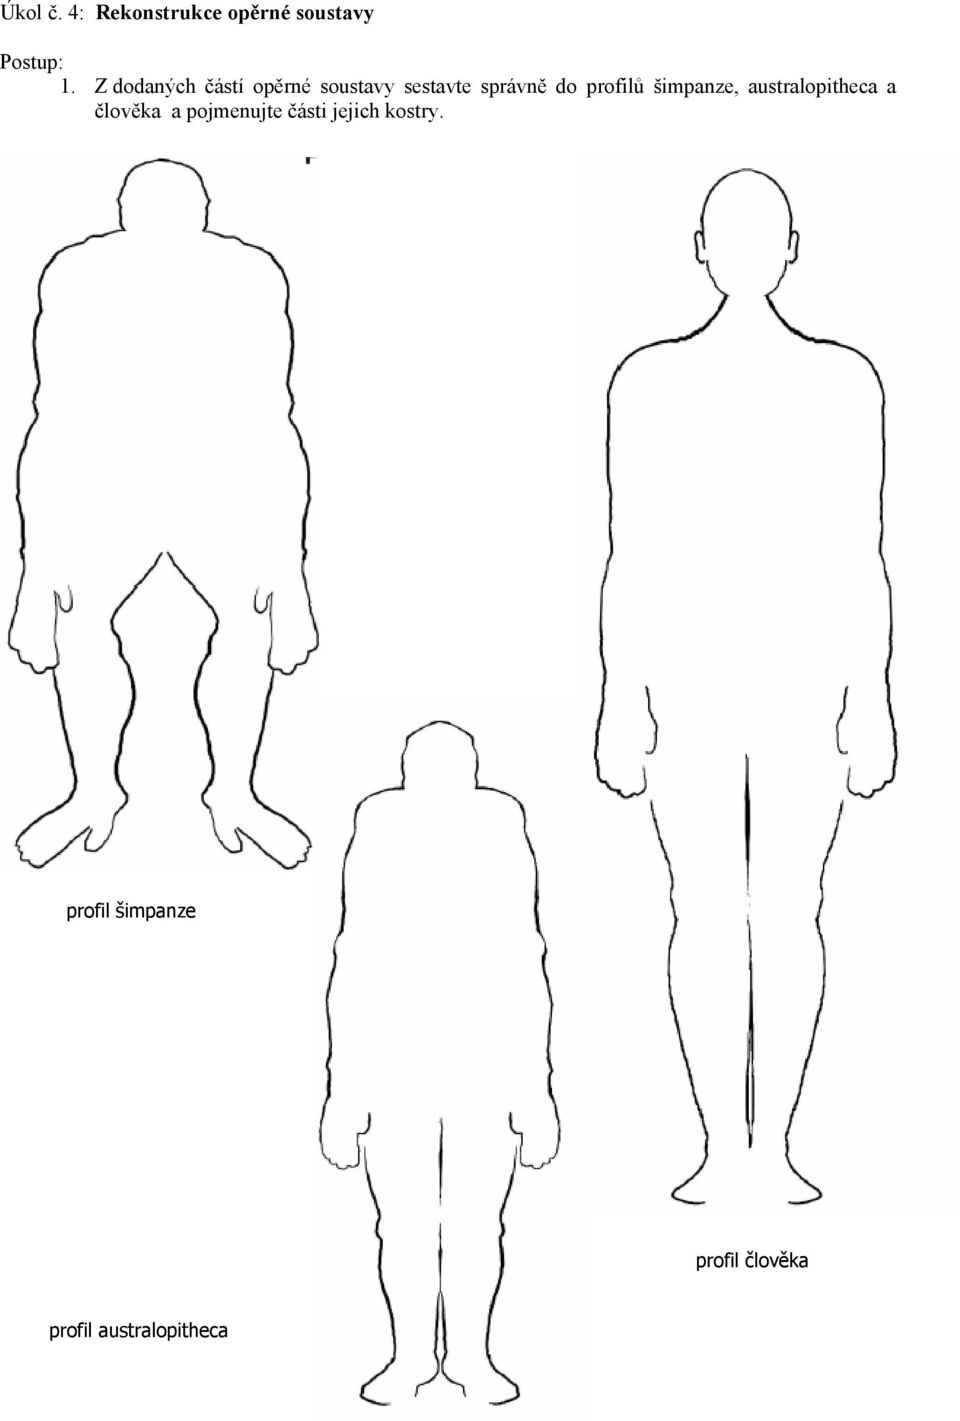 profilů šimpanze, australopitheca a člověka a pojmenujte